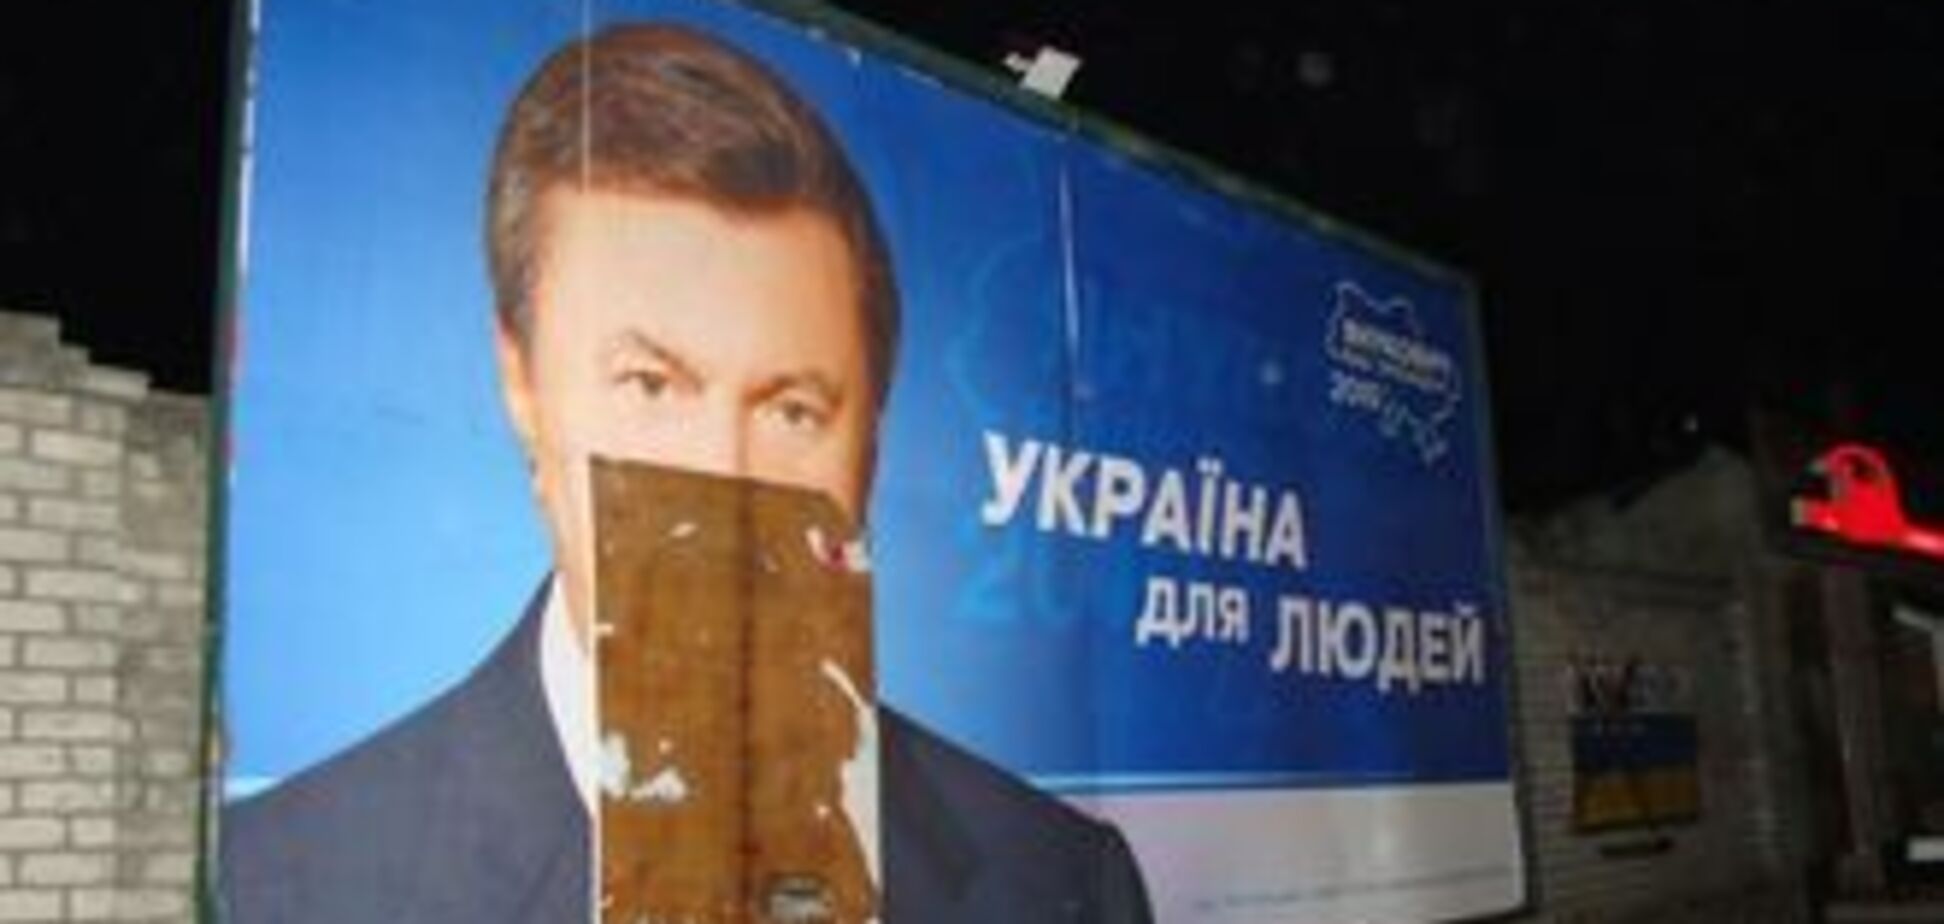 Тернопільські хулігани облили Януковича фарбою